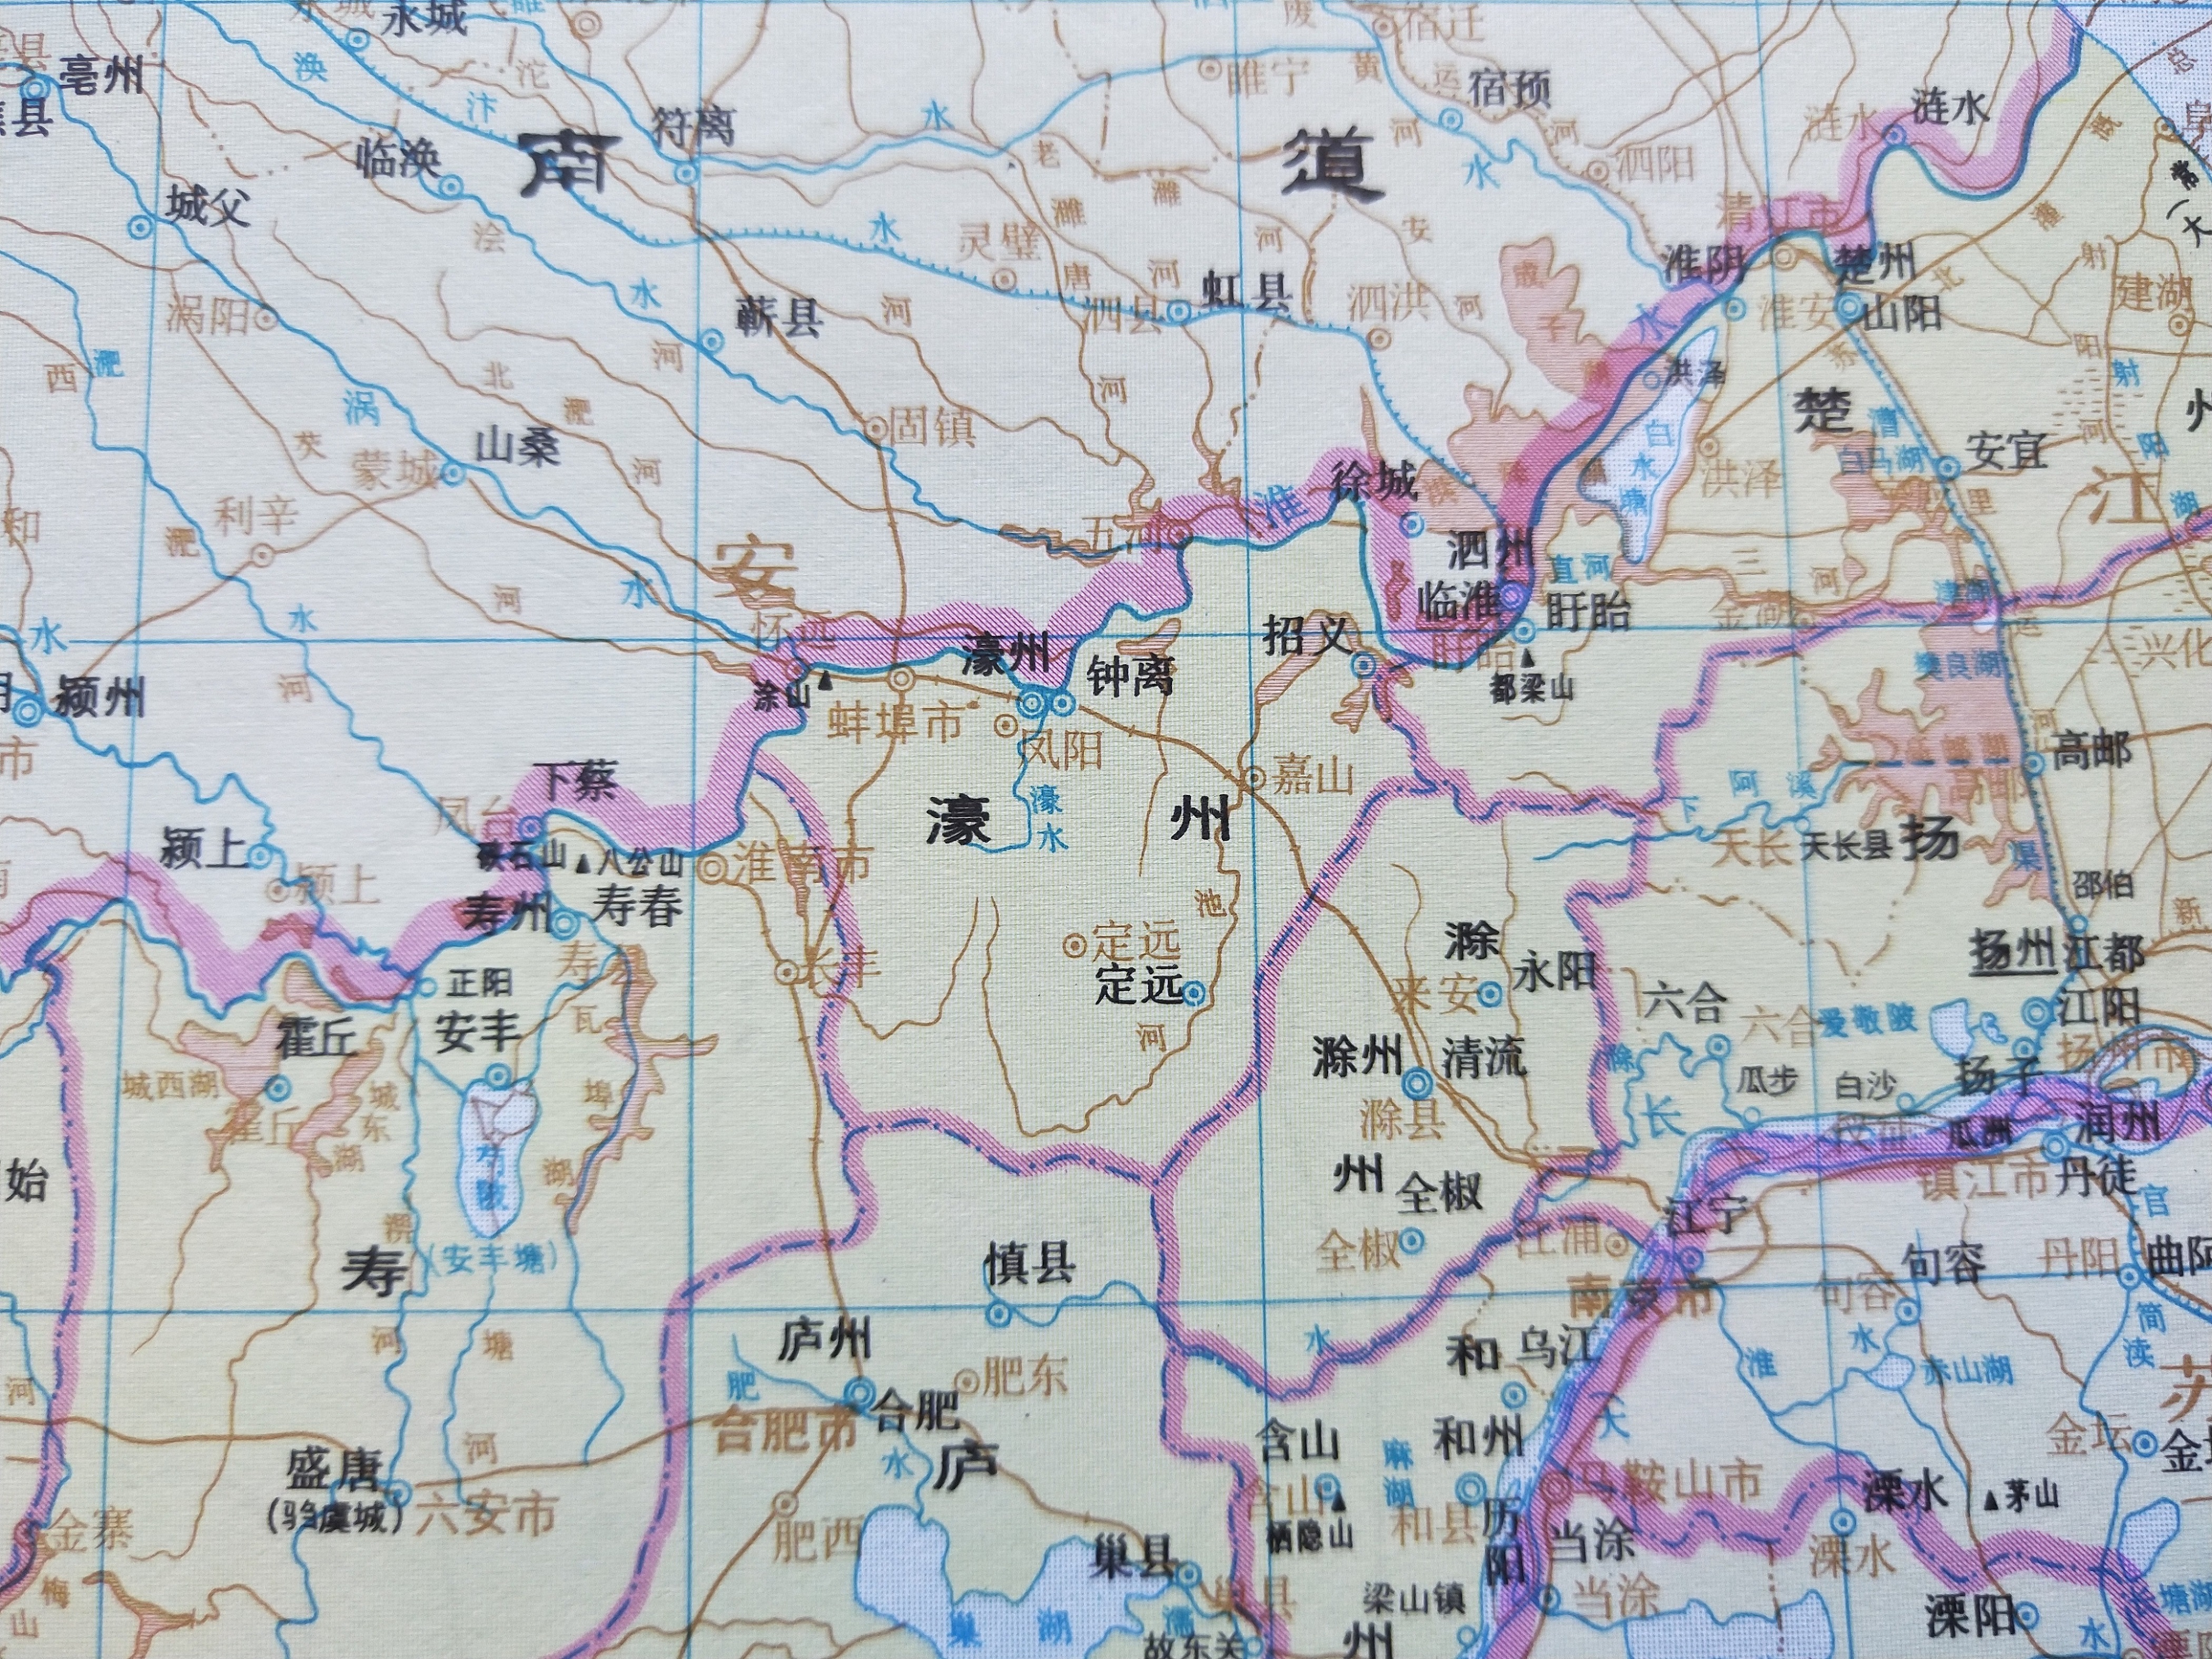 西汉时,在郡县制以上加设州级行政区,蚌埠属于扬州九江郡